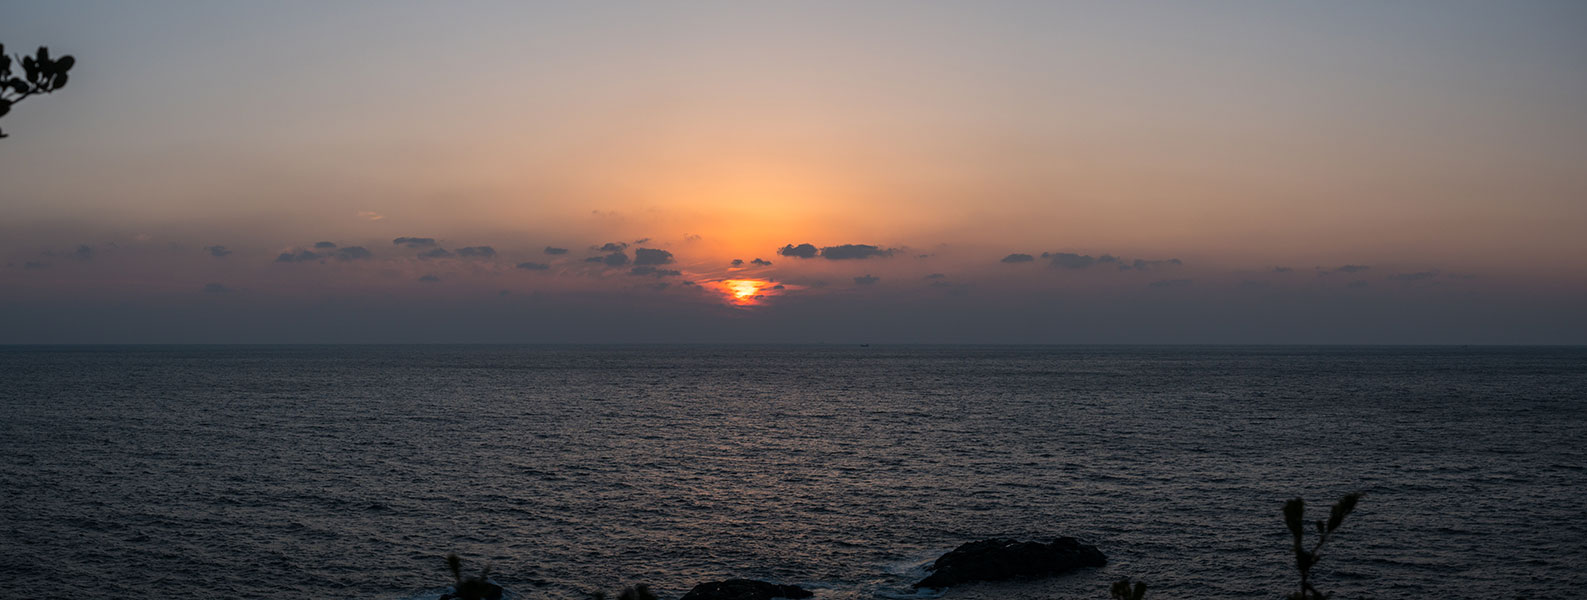 潮岬灯台奥の展望スポットからの夕陽